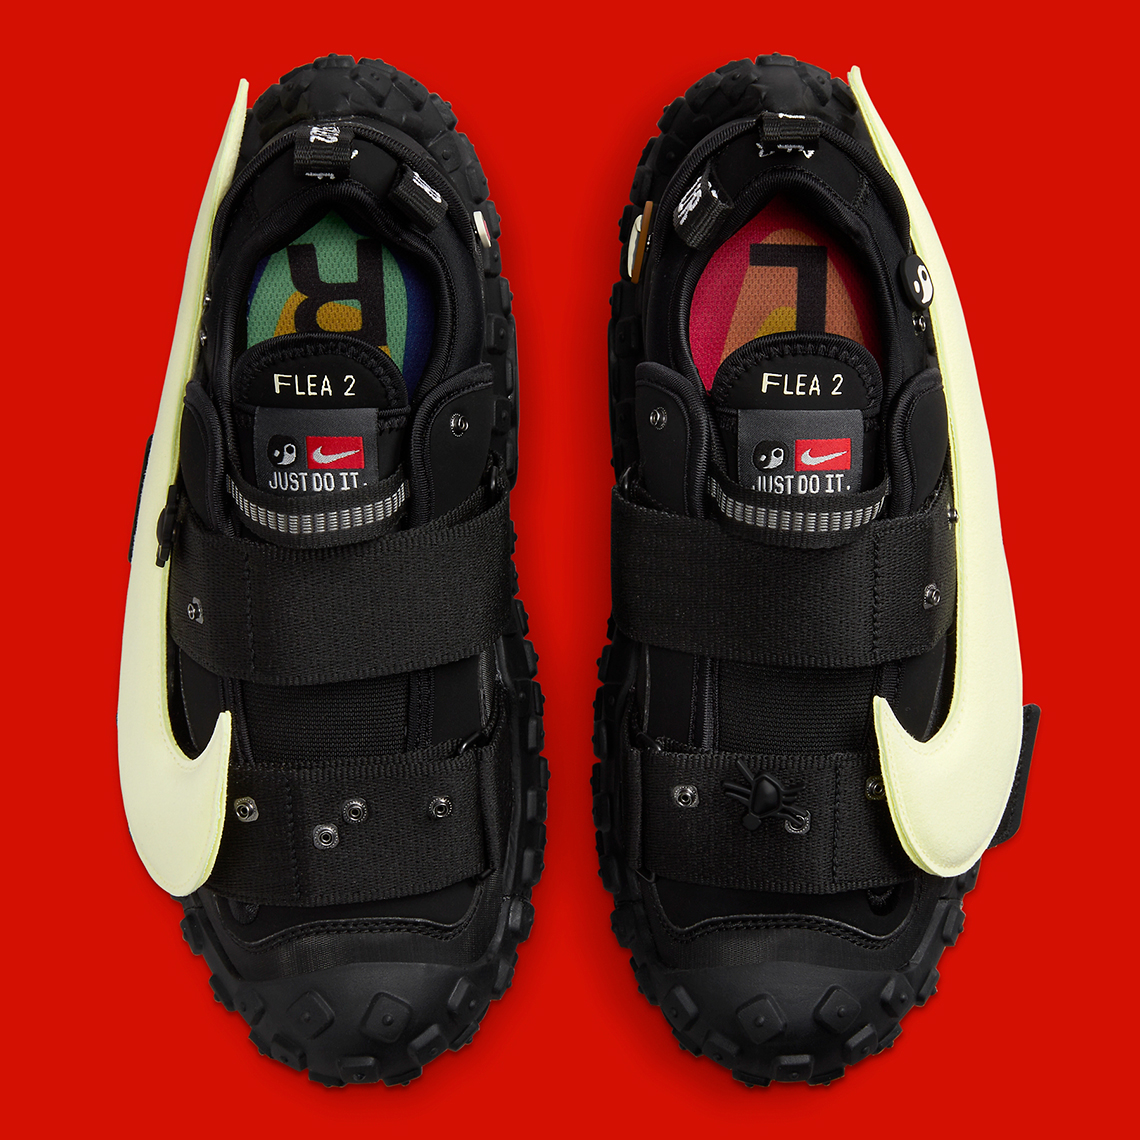 Cpfm Nike Flea 2 Black Alabaster Dv7164 001 Release Date 5